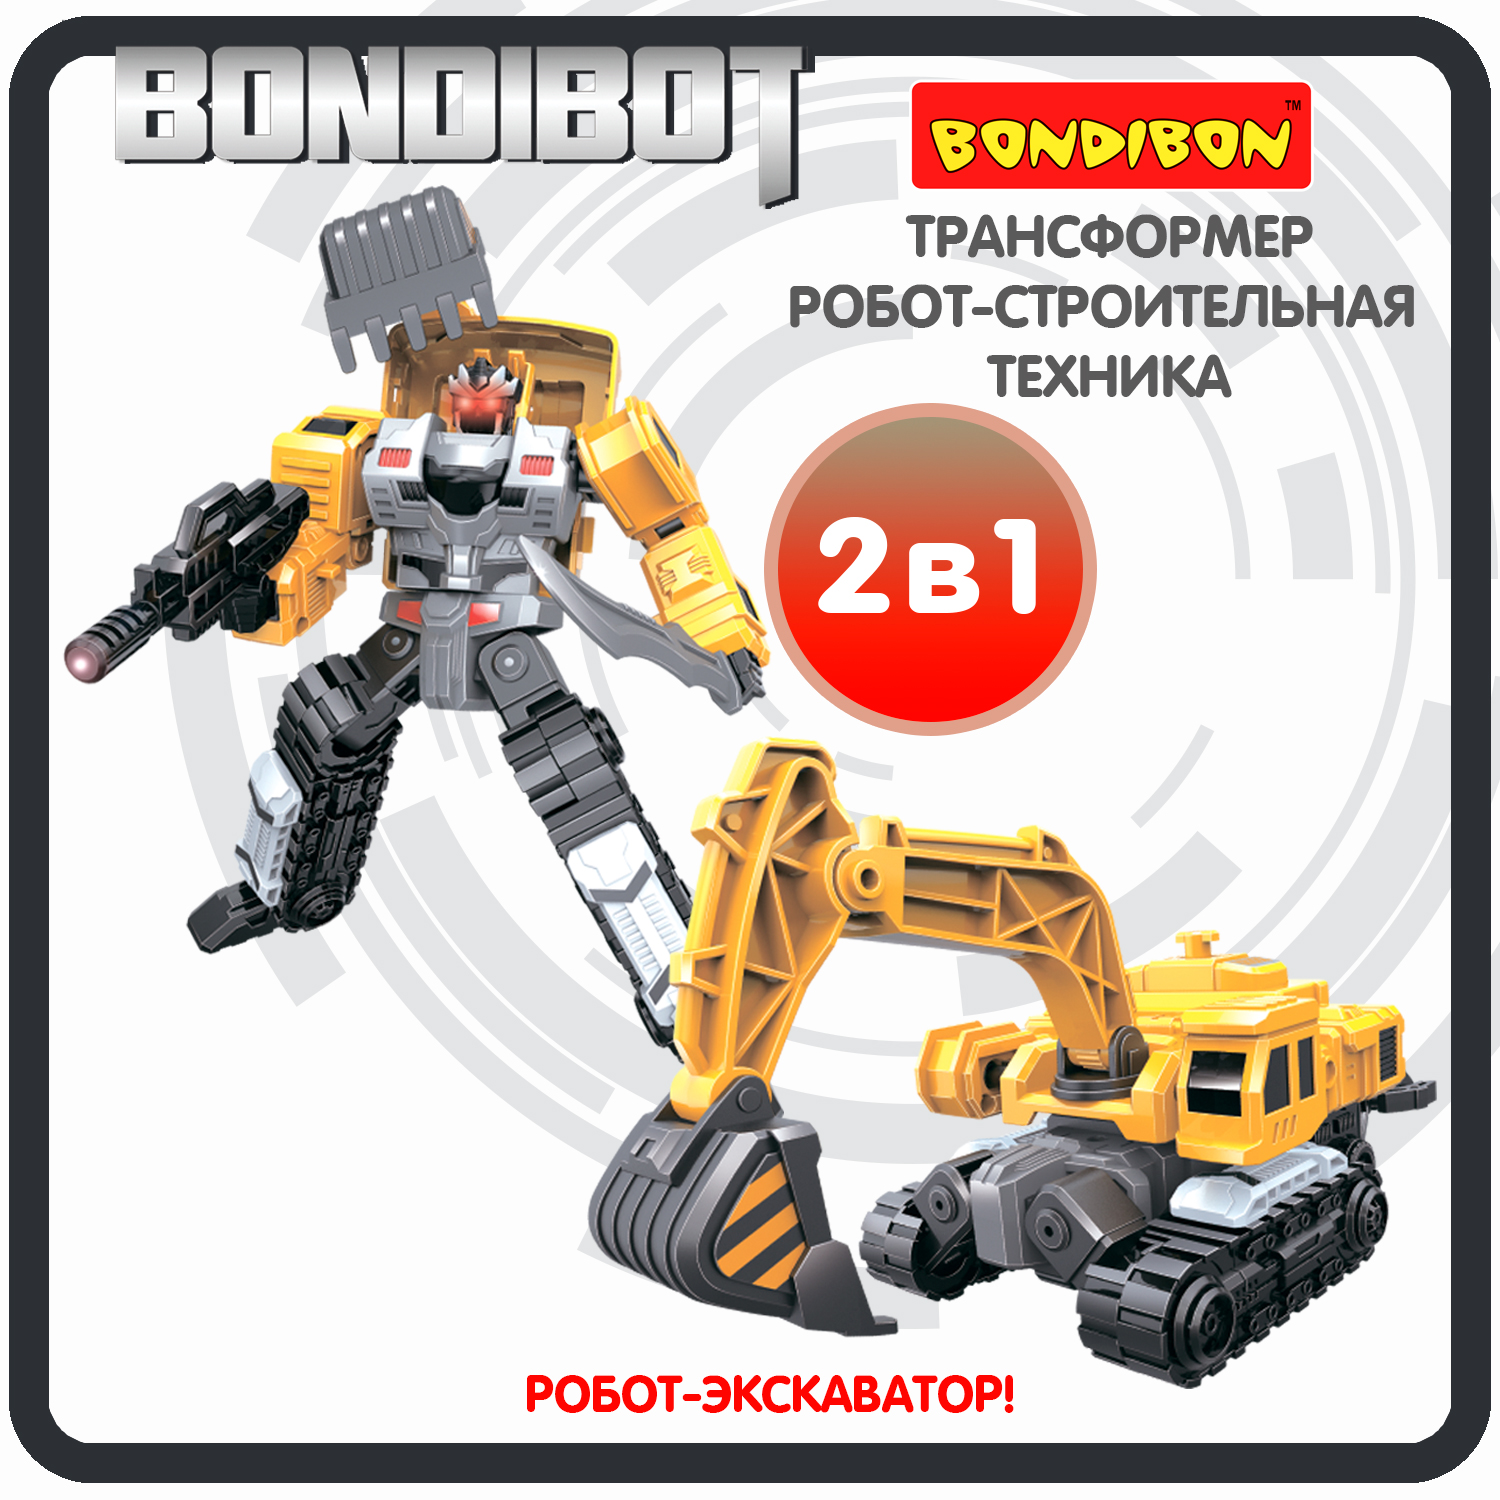 Трансформер робот-строительная техника, 2в1 BONDIBOT Bondibon, экскаватор / ВВ6048 робот трансформер 2в1 bondibon bondibot машинка экскаватор погрузчик